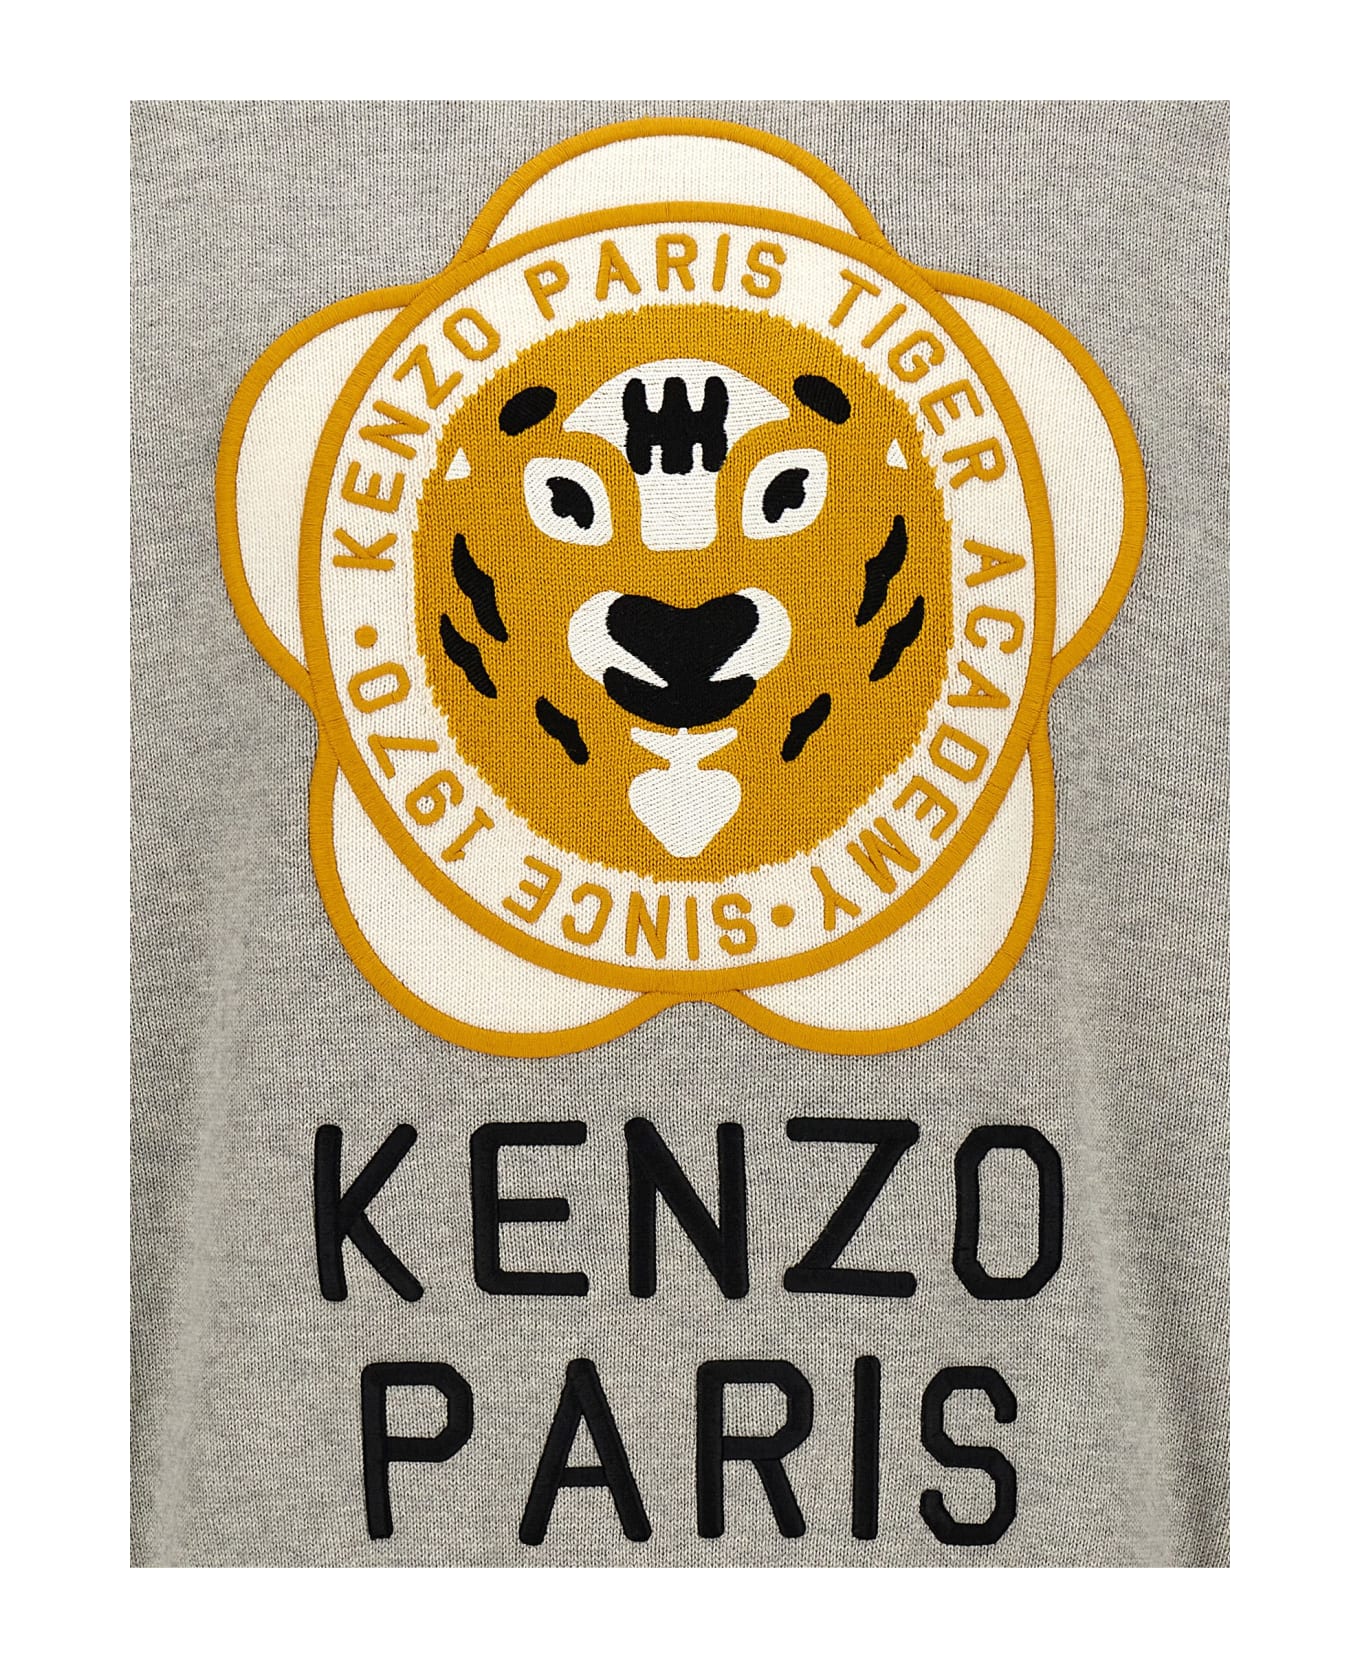 Kenzo Tiger Academy Sweater - grey